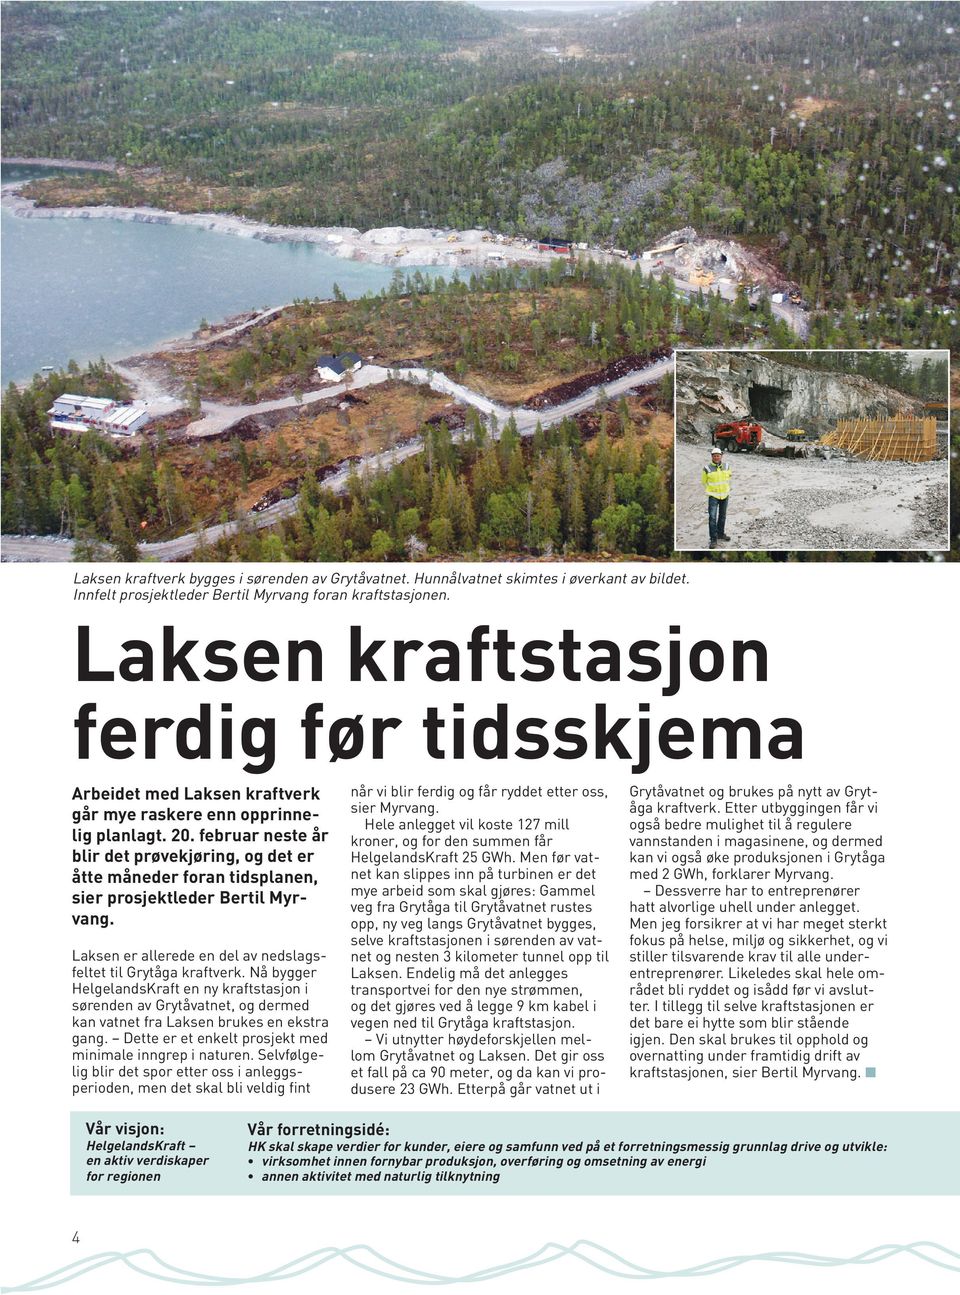 februar neste år blir det prøvekjøring, og det er åtte måneder foran tidsplanen, sier prosjektleder Bertil Myrvang. Laksen er allerede en del av nedslagsfeltet til Grytåga kraftverk.